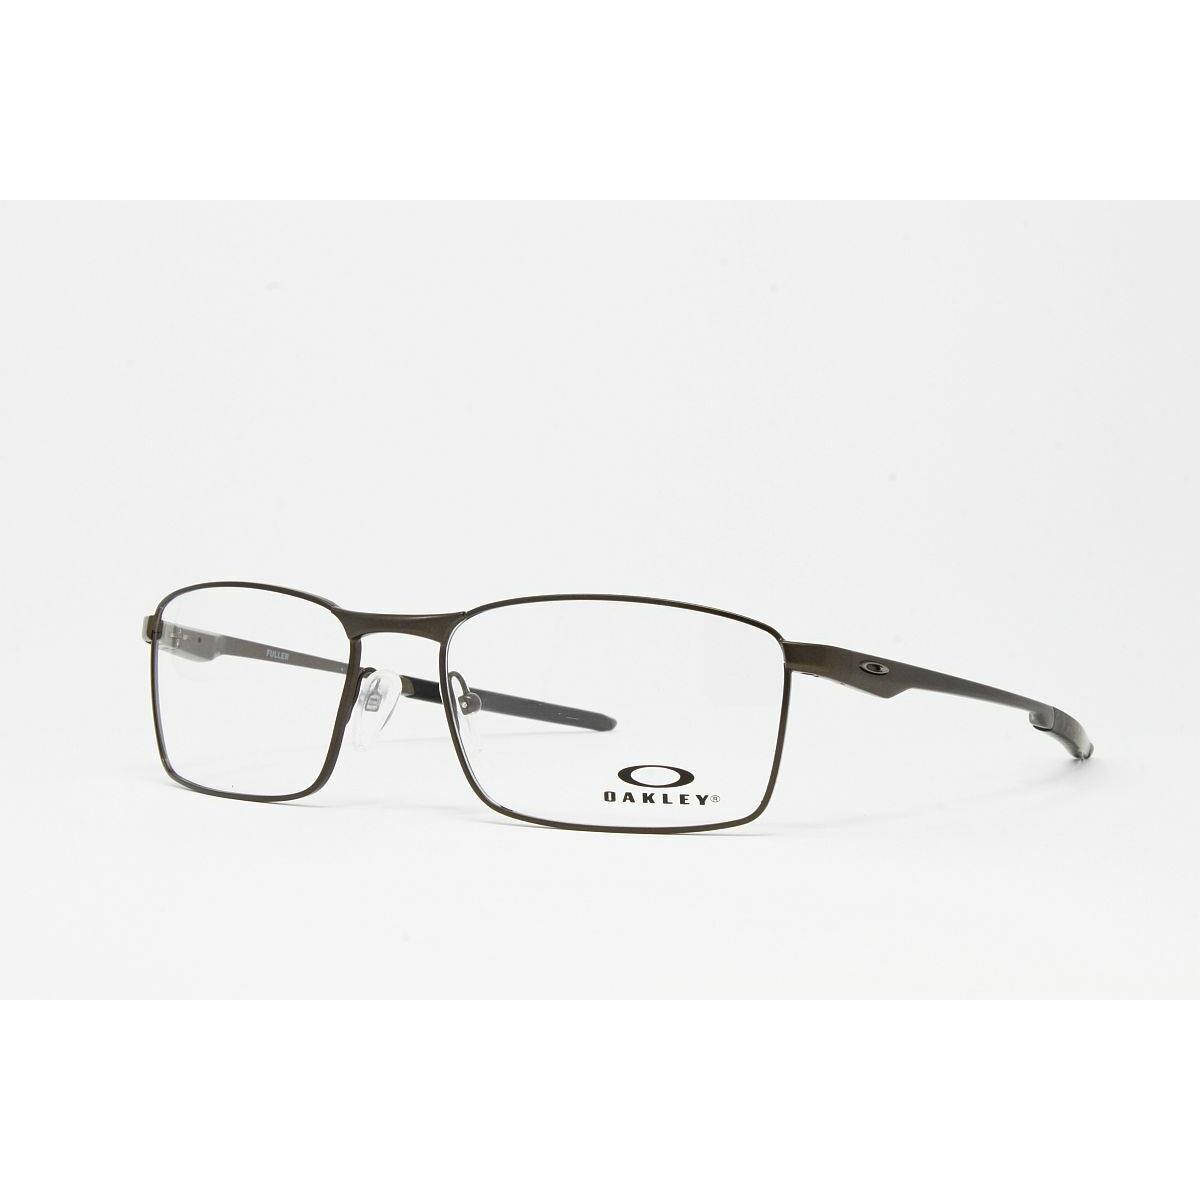 Oakley Optical Fuller OX3227 02 Pewter Eyeglasses 55mm Frames RX